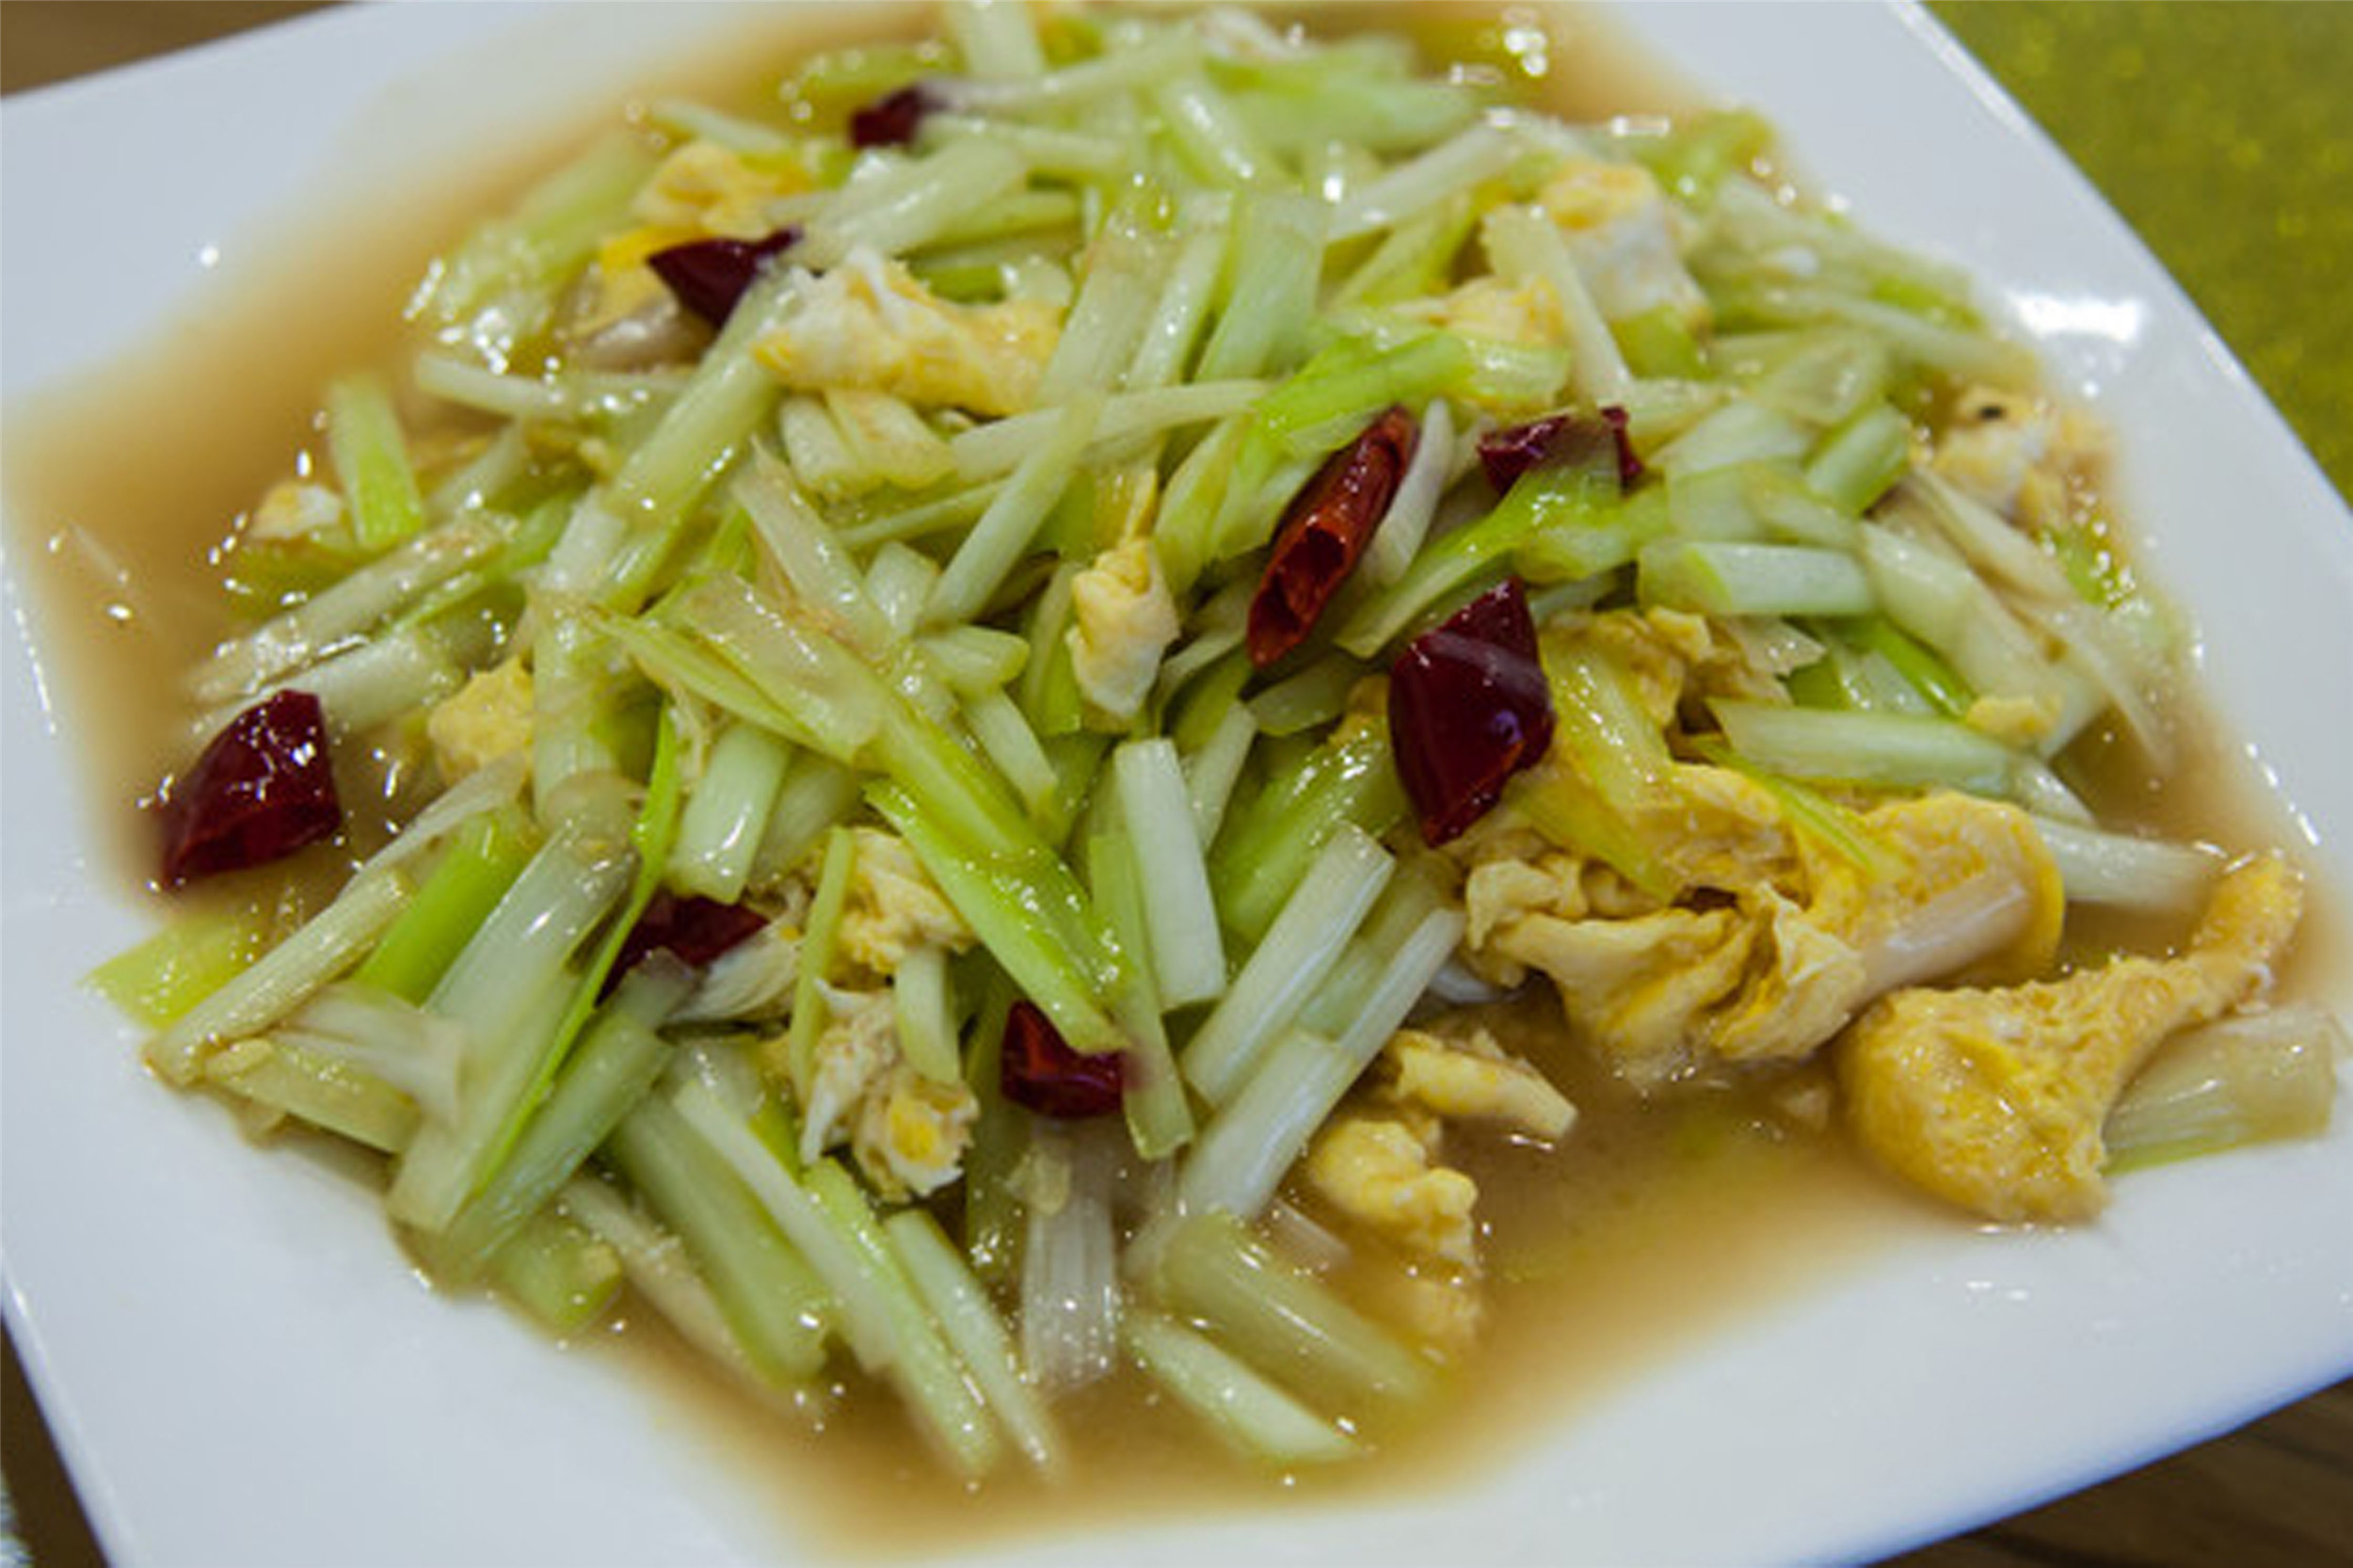 韭黄炒蛋:味道鲜美可口,烹饪简单,美味又营养.